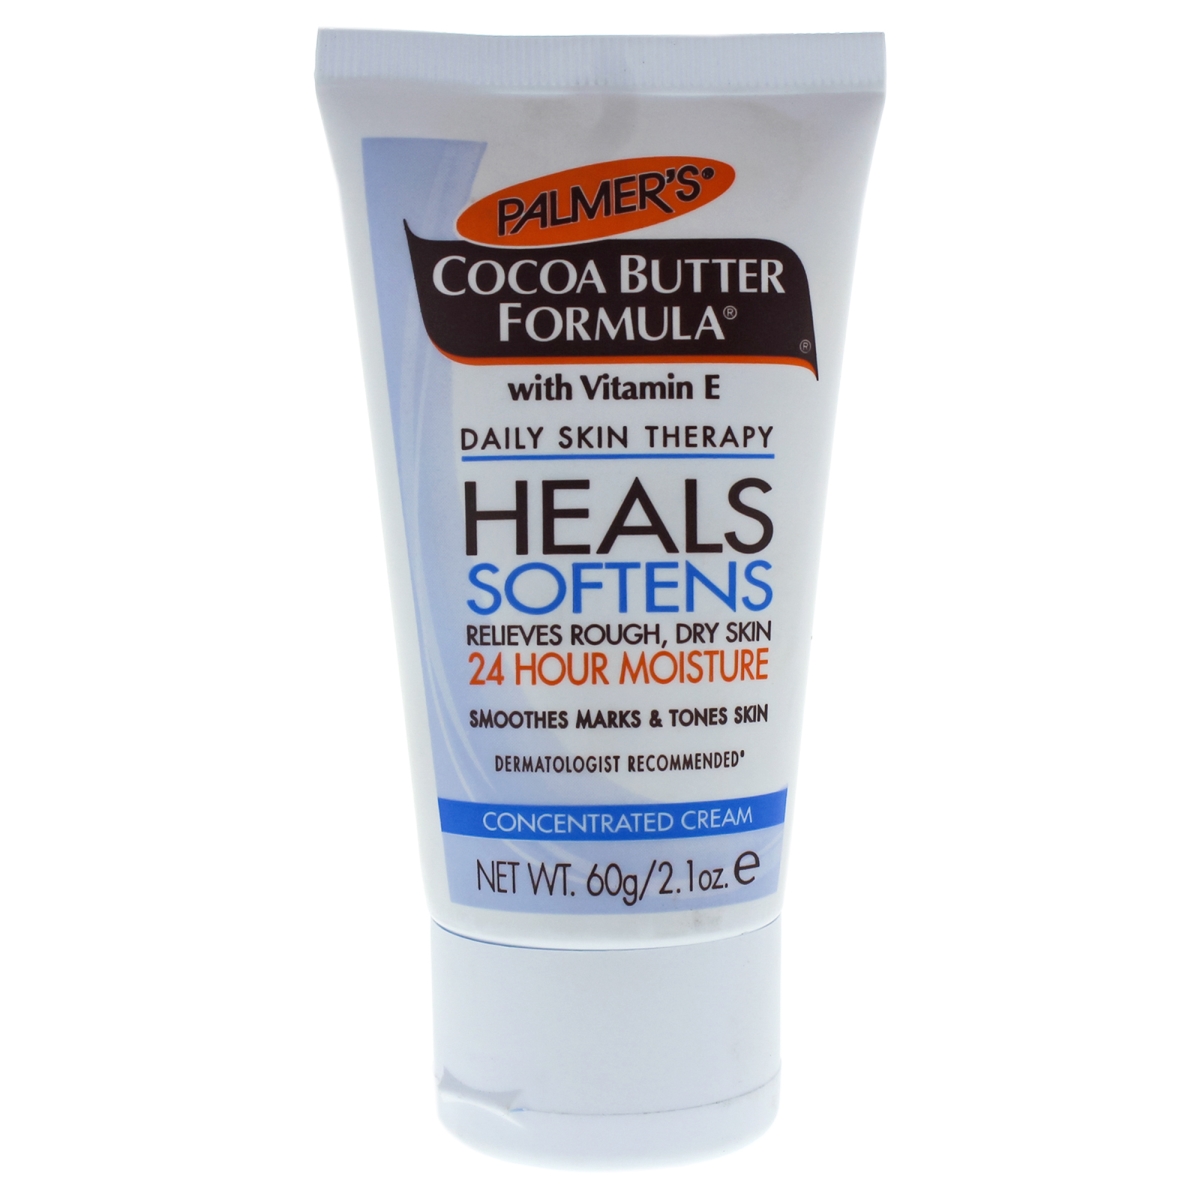 Palmer's Cocoa Butter Formula with Vitamin E Concentrated Cream, 2.1 oz